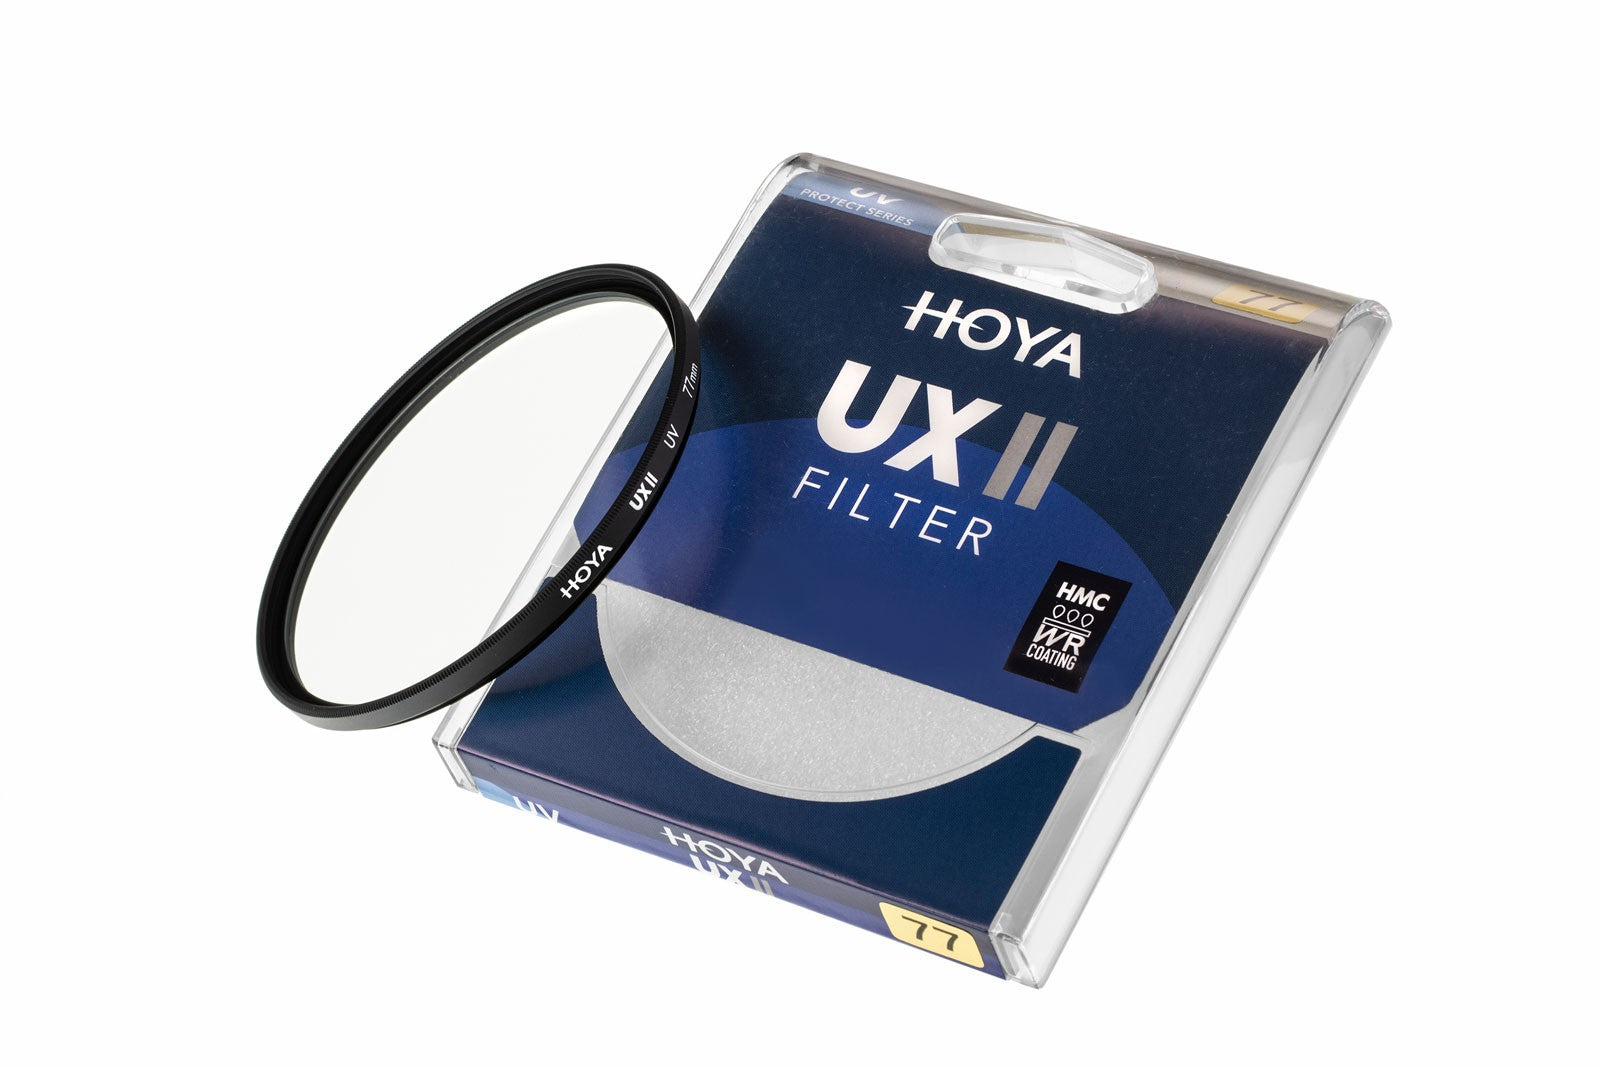 Product Image of Hoya UX II UV Filter